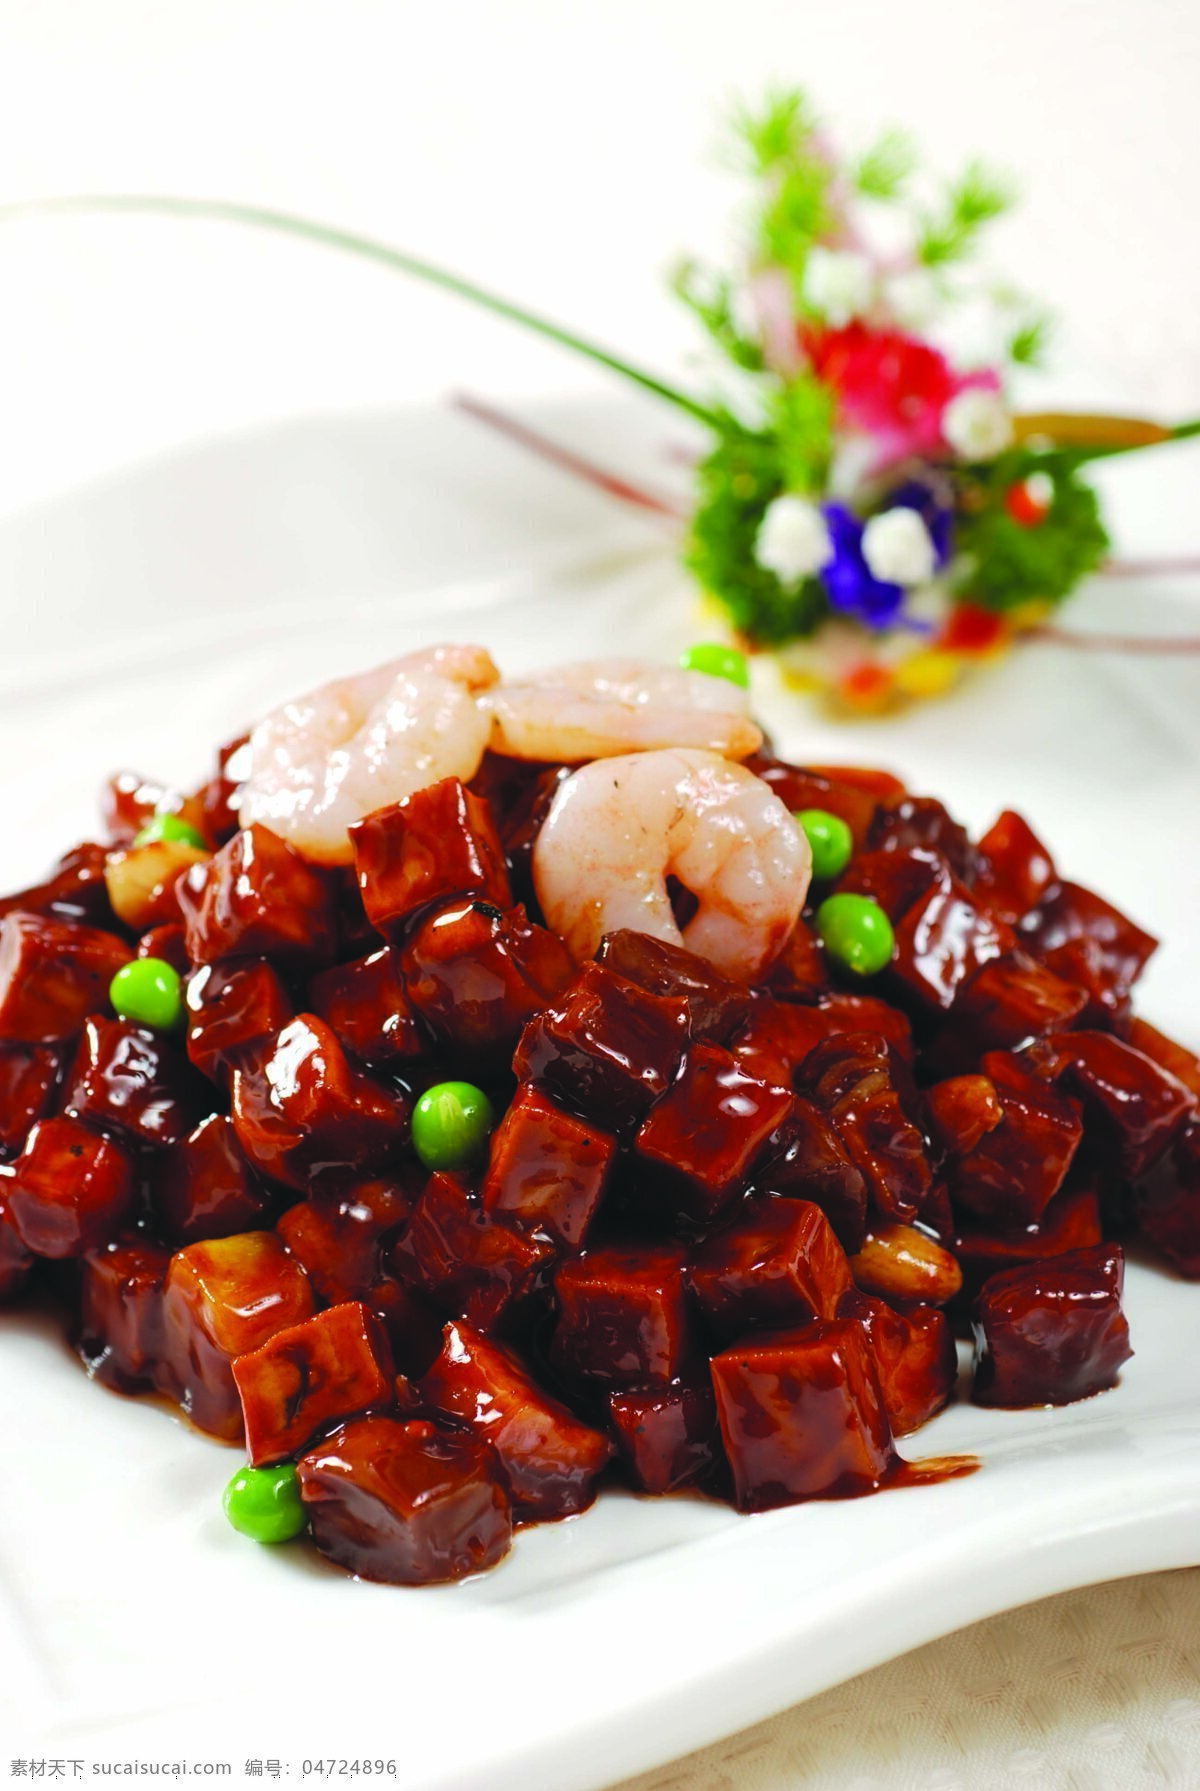 八宝辣酱 腰果 花生 鸡肉块 豌豆 虾仁 香干 传统美食 餐饮美食